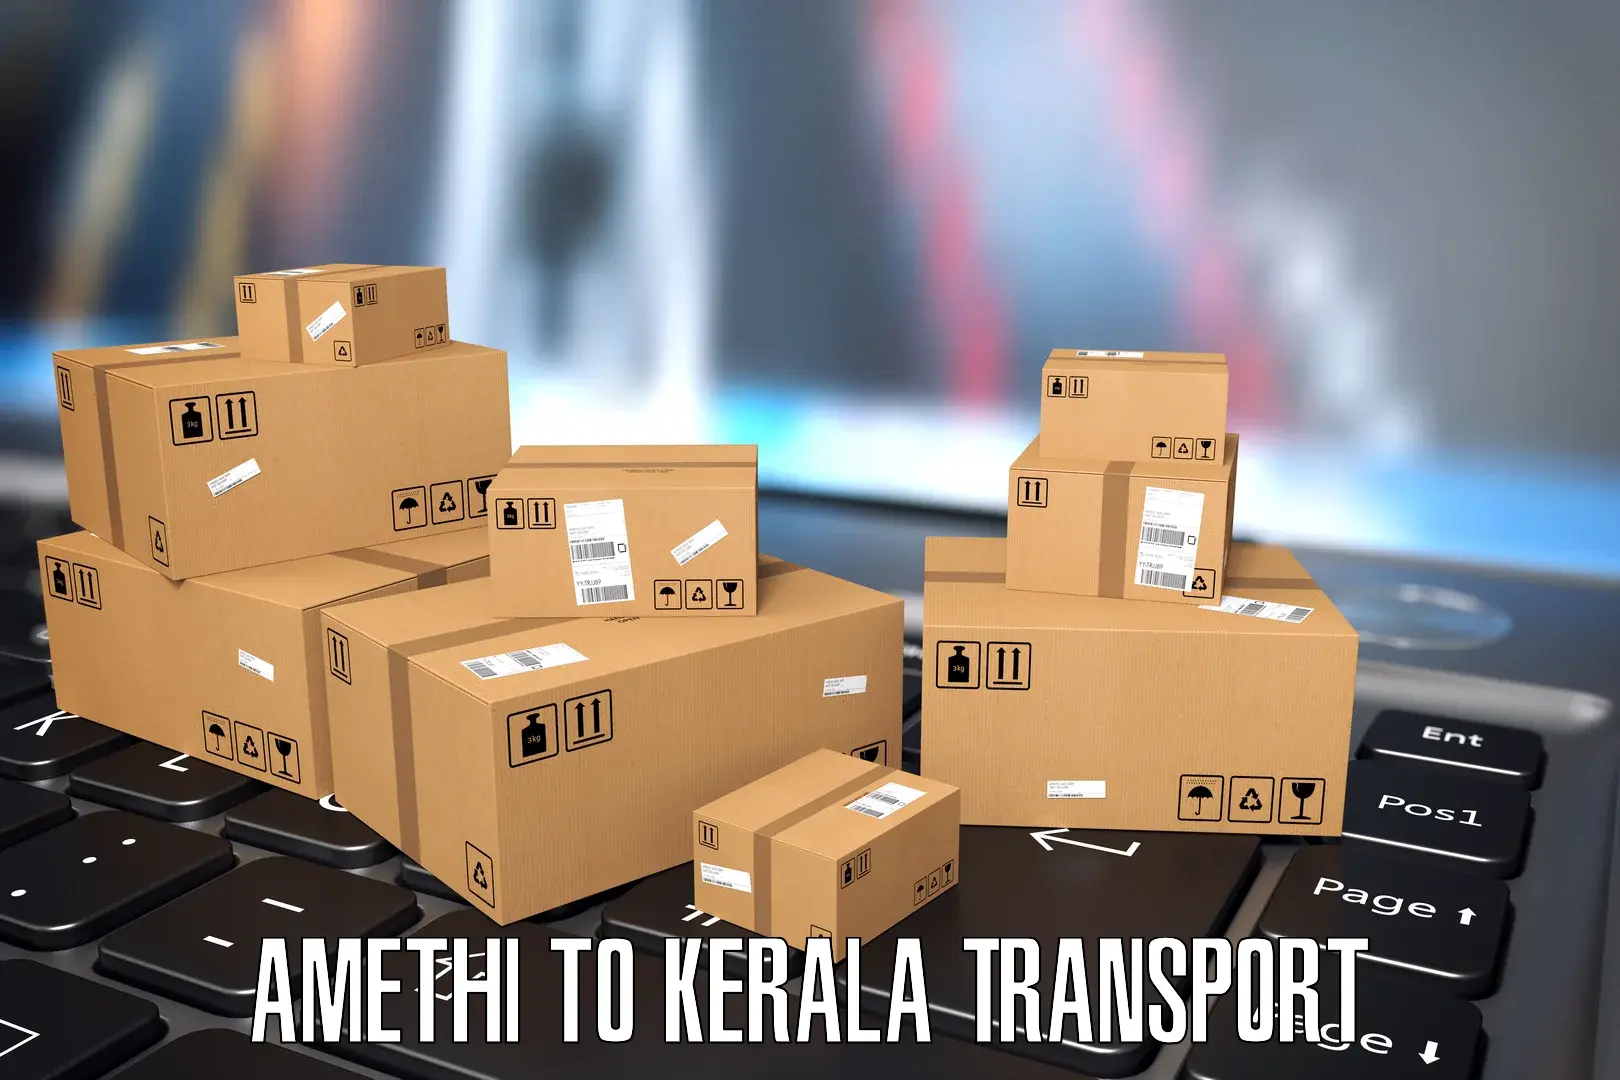 Container transport service Amethi to Mundakayam